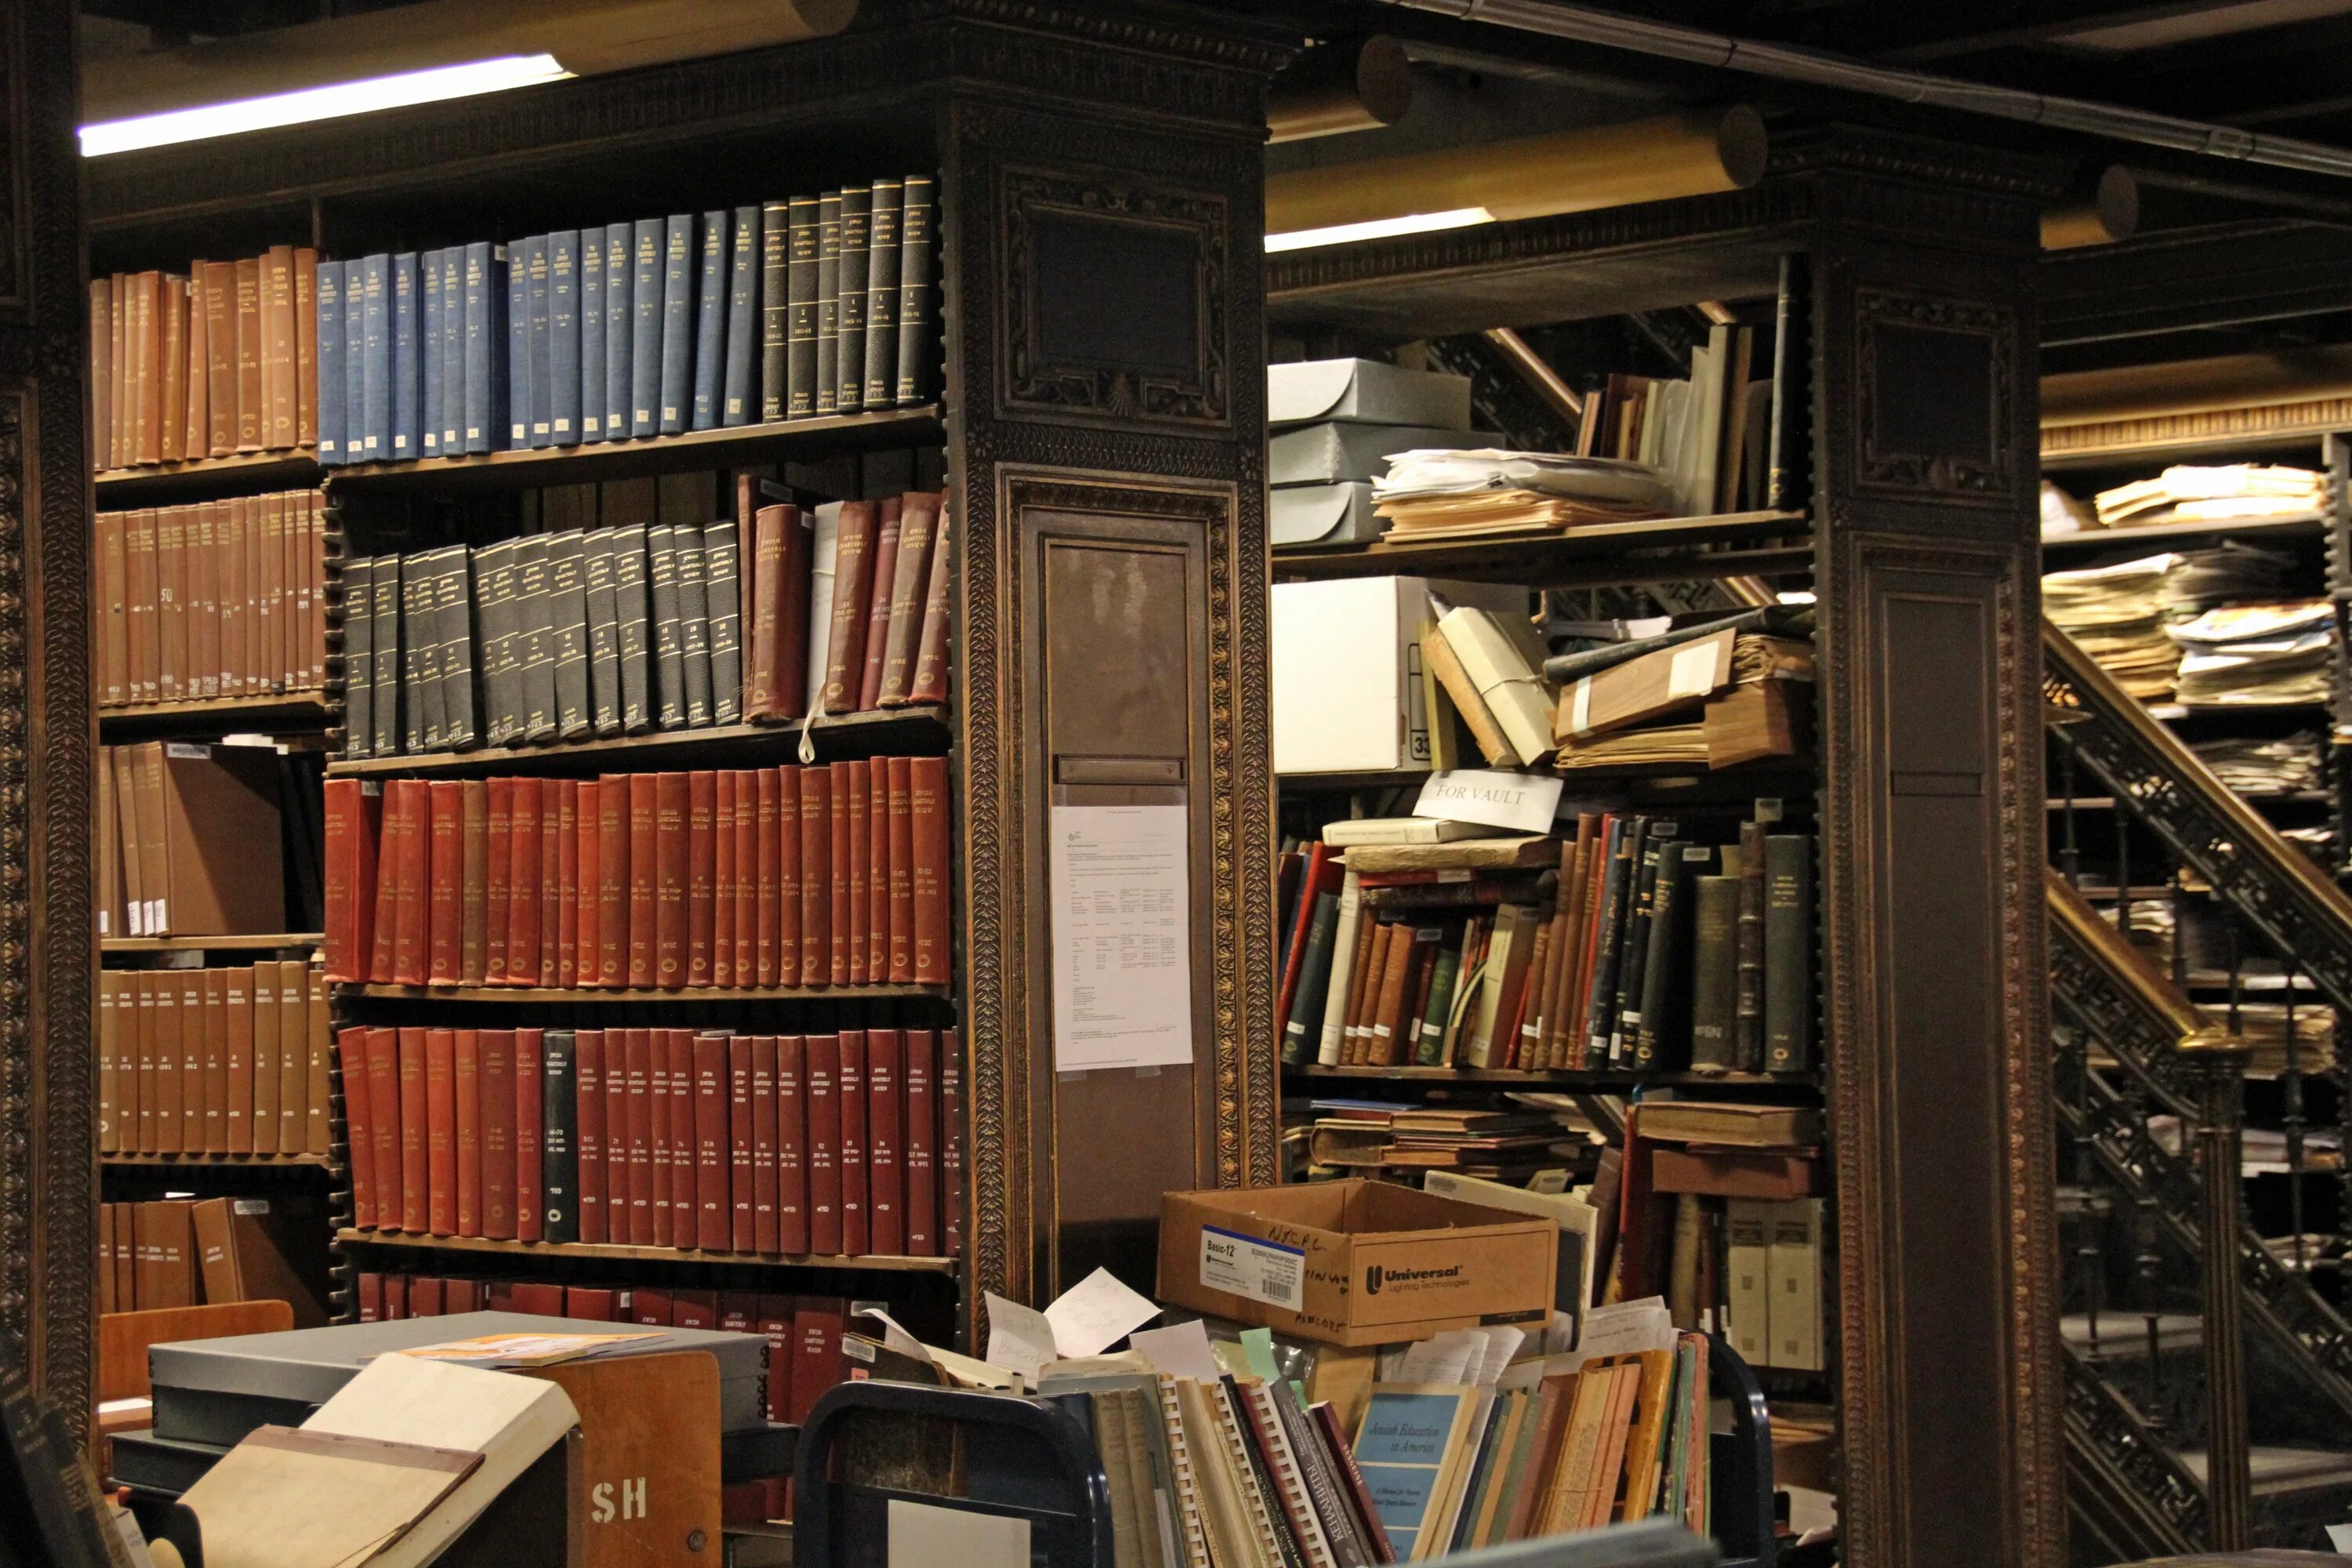 Сайты редких книг. Шкаф для книг. Старый шкаф с книгами. Стеллажи для книг в библиотеку. Полка для книг.